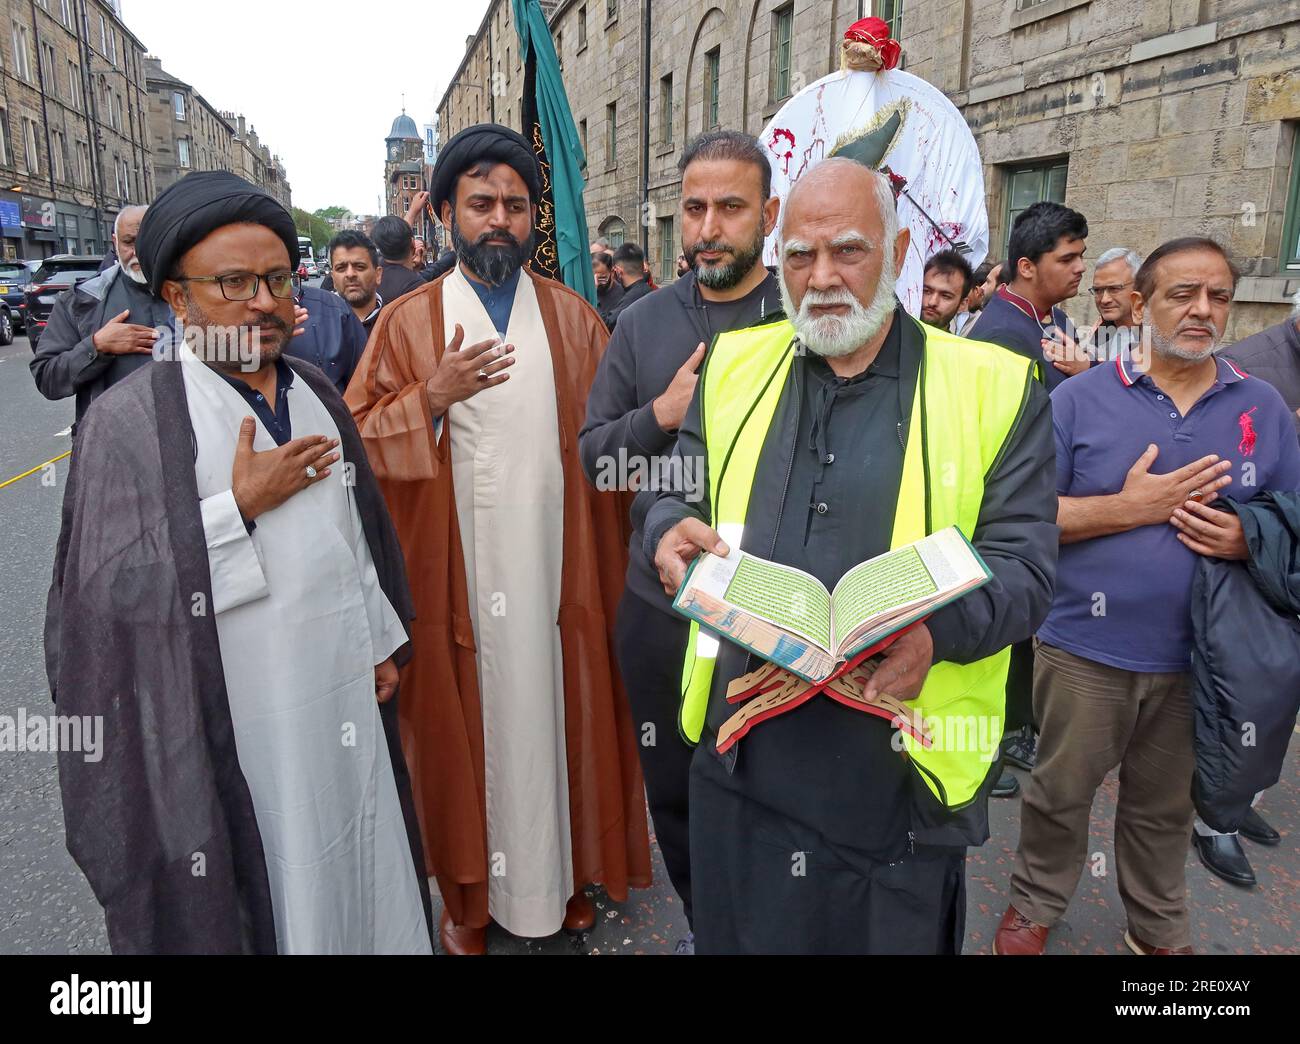 Musulmans chiites écossais, marche annuelle de l'Imam Hussain pour la paix, lecture du Coran à travers 36 Great Jct Street, Leith, Édimbourg, Écosse, Royaume-Uni, EH6 5LA Banque D'Images